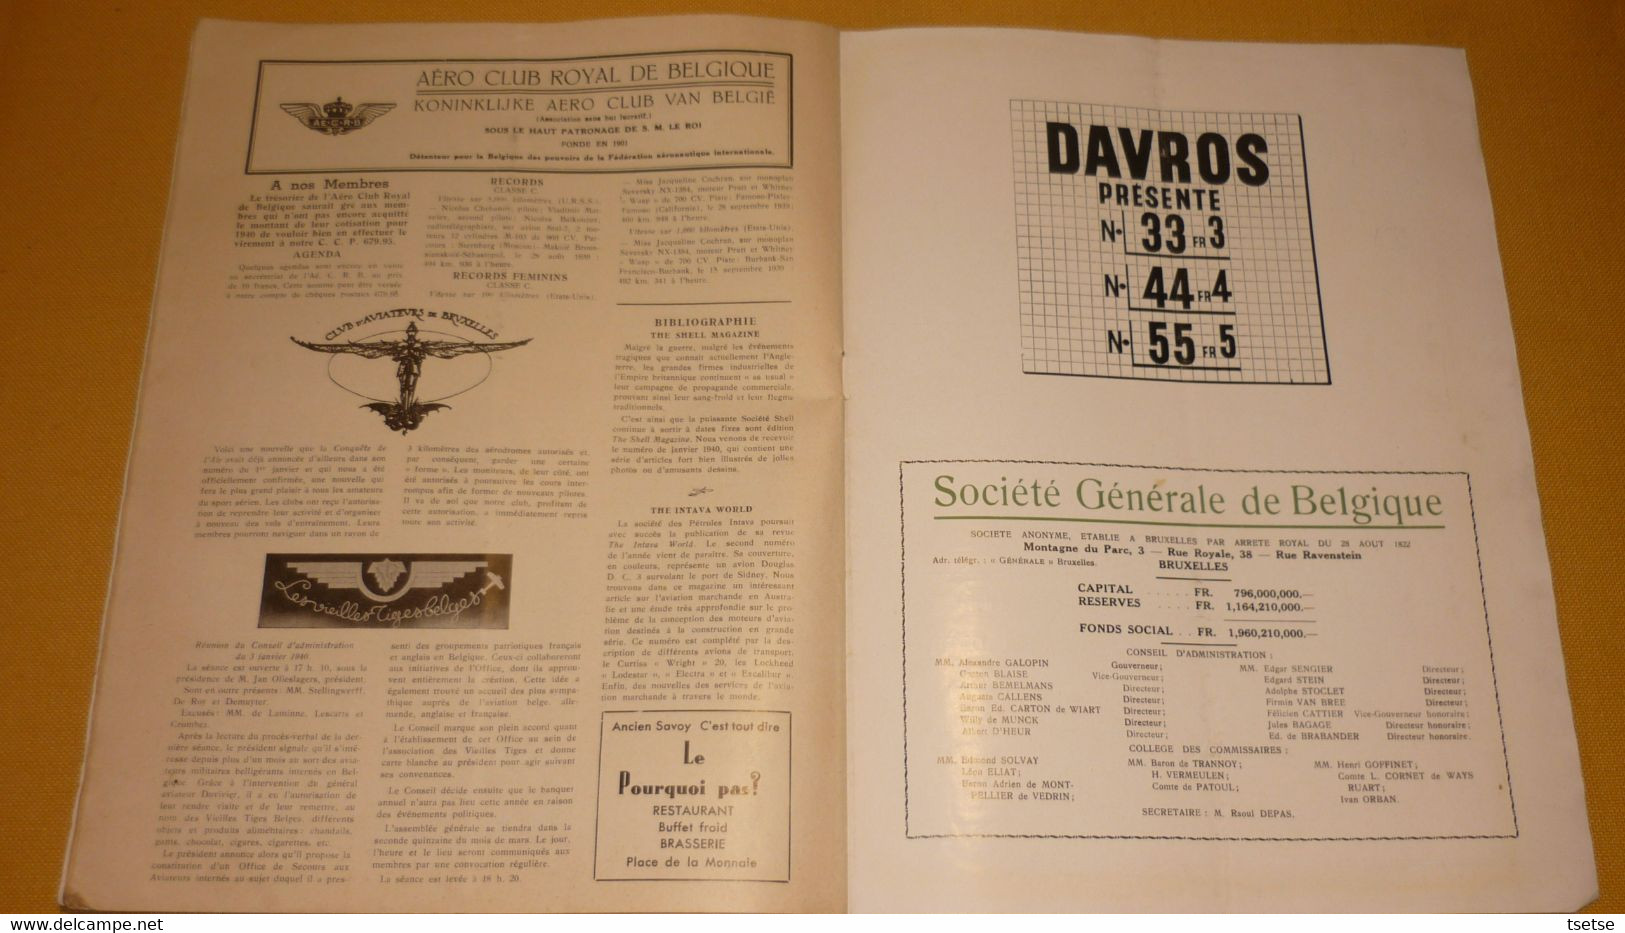 Revue " La Coquète de l'Air " - 1er Février 1940 / articles sur la Sabena, pub : SABCA, Fokker